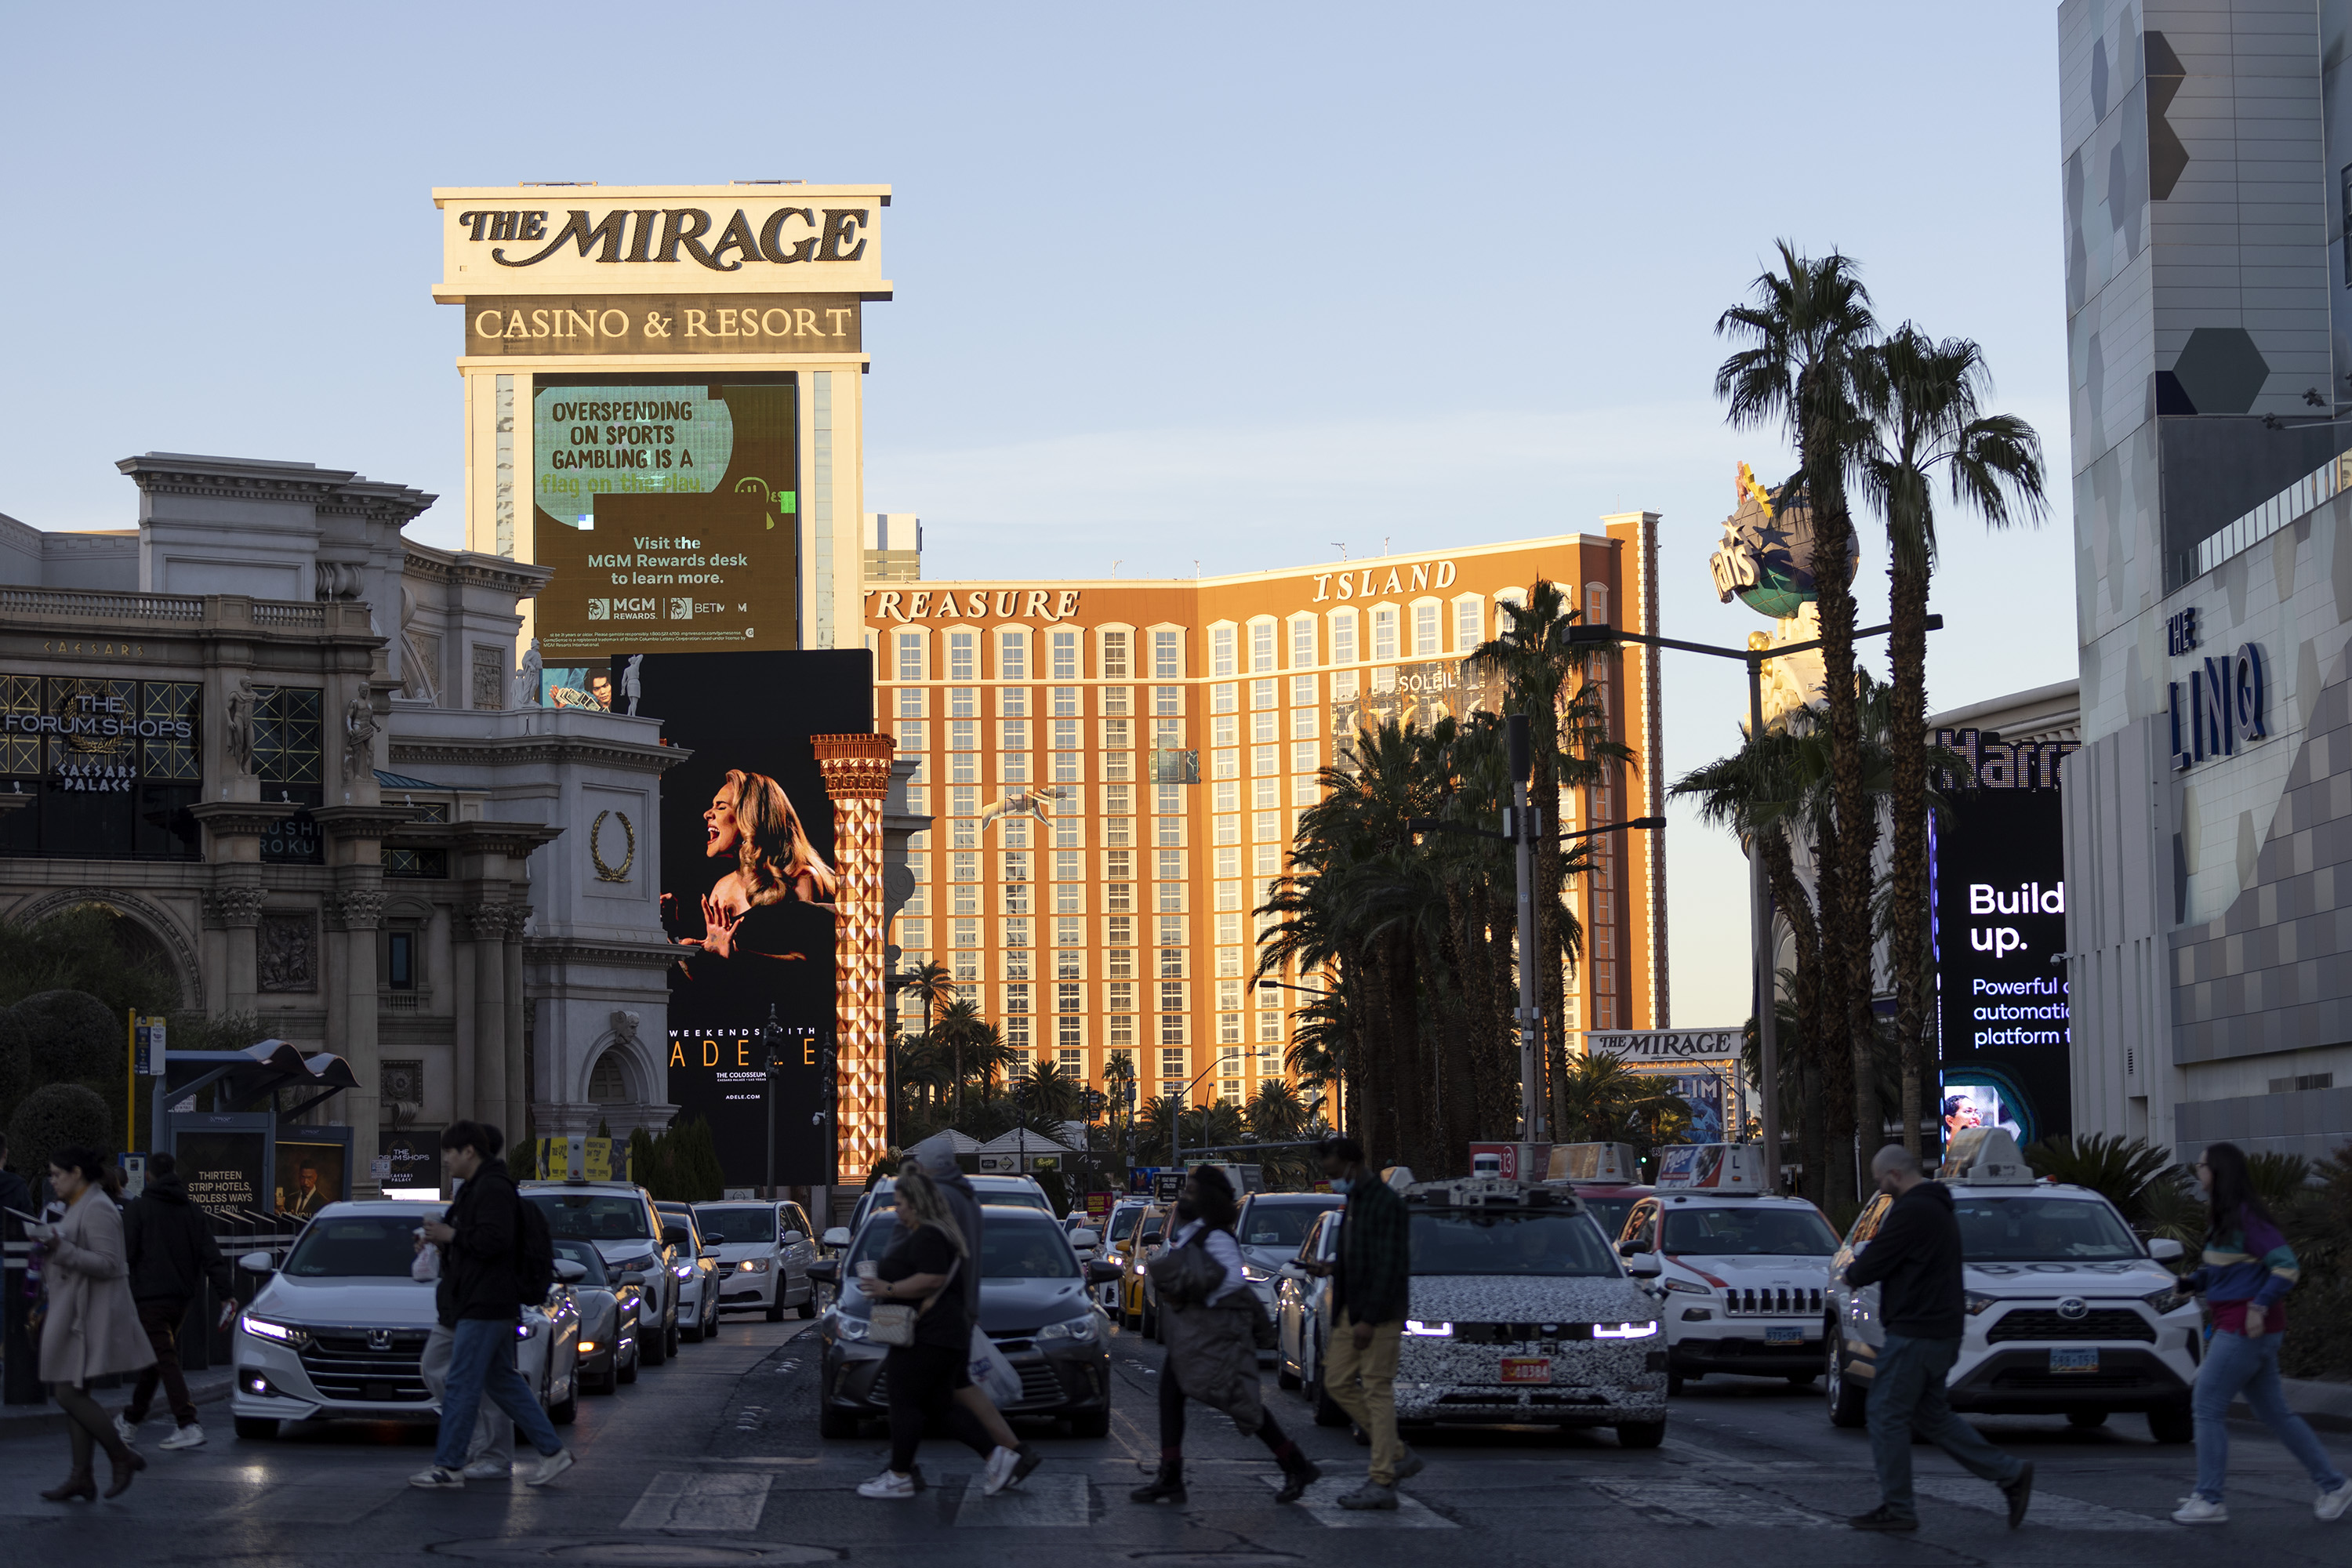 Tarif kamar Las Vegas memuncak pada bulan Oktober